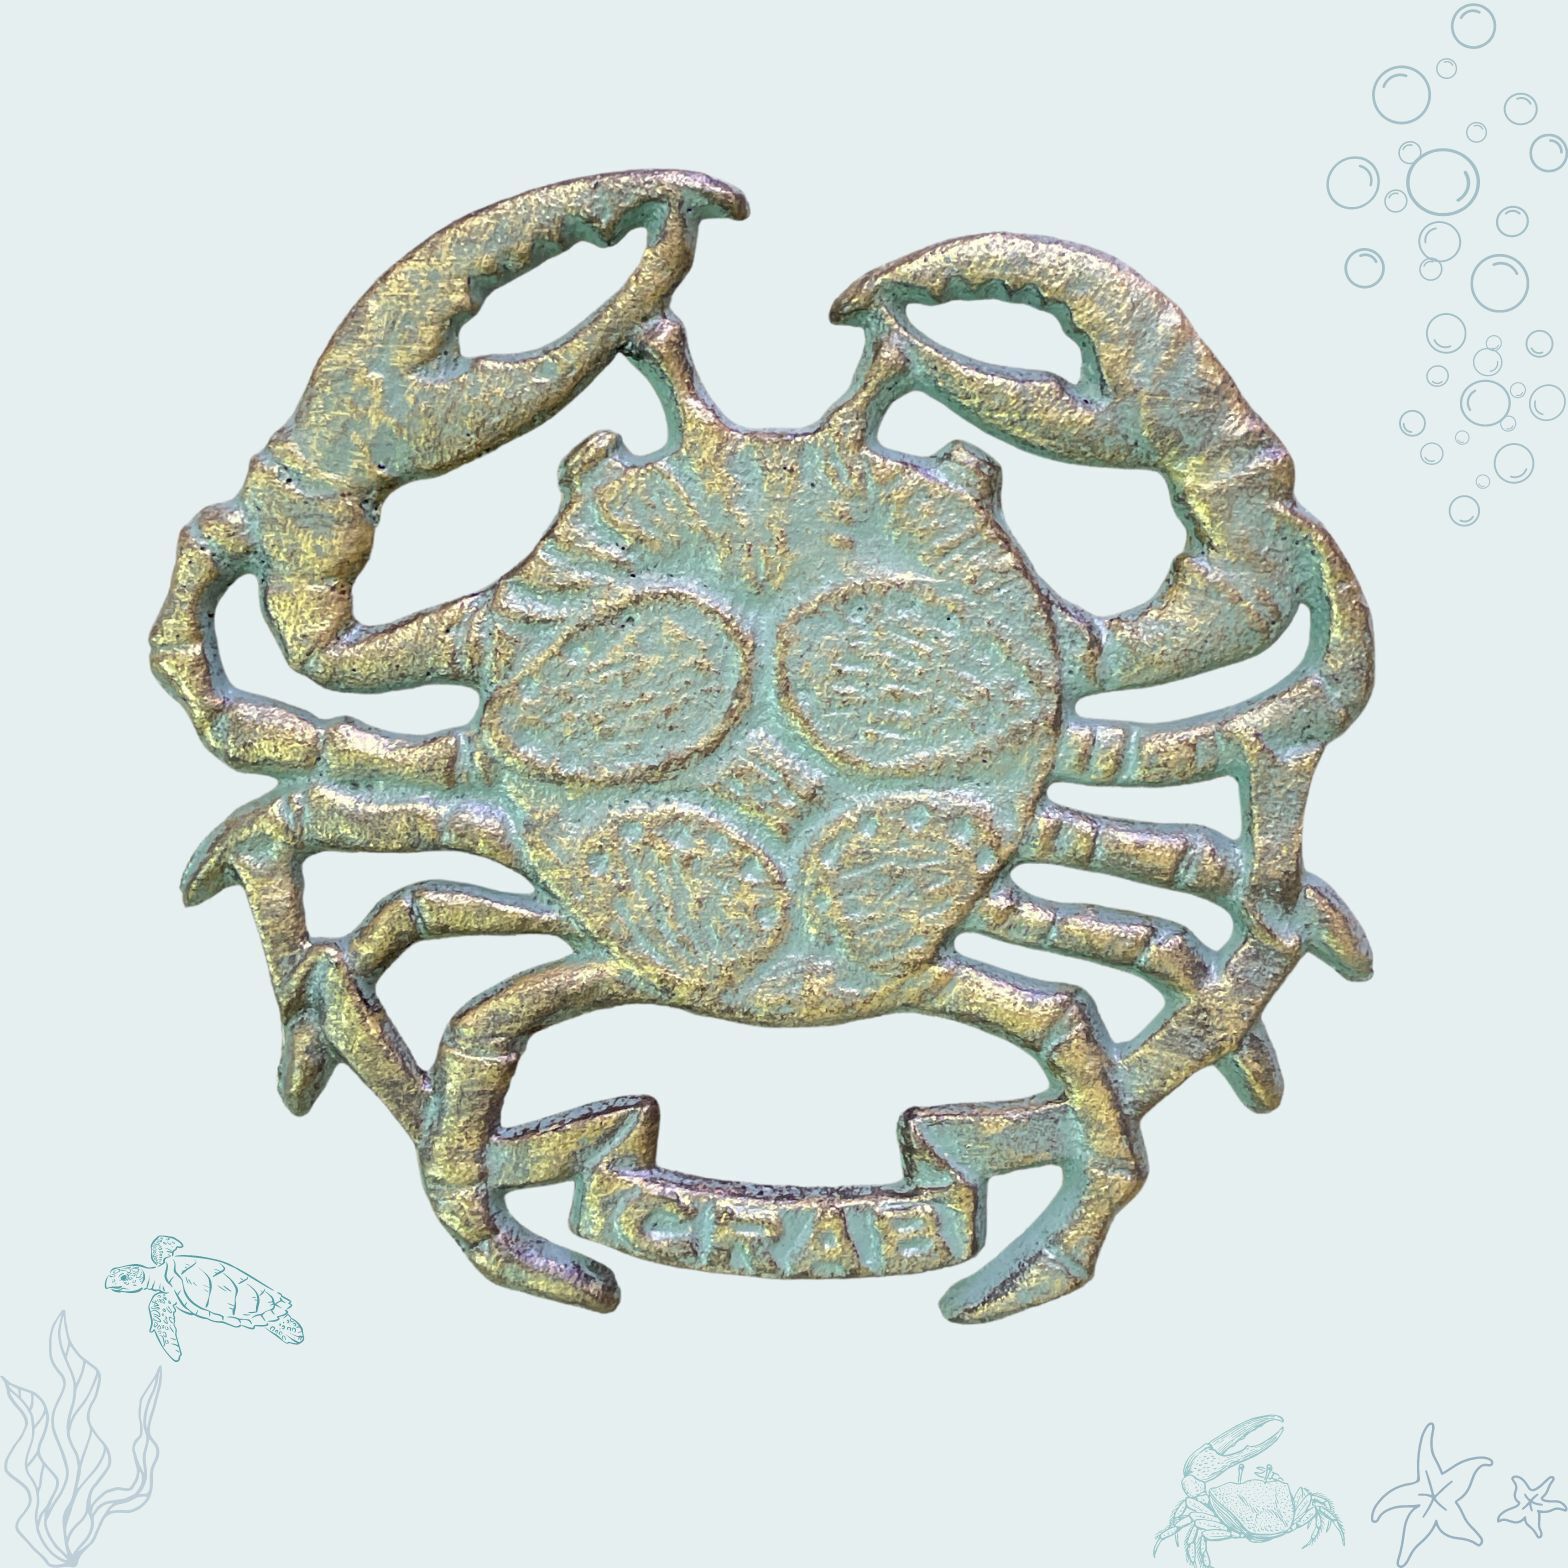 Trivet with Cast Iron Verdigris Crab Antique Bronze Design